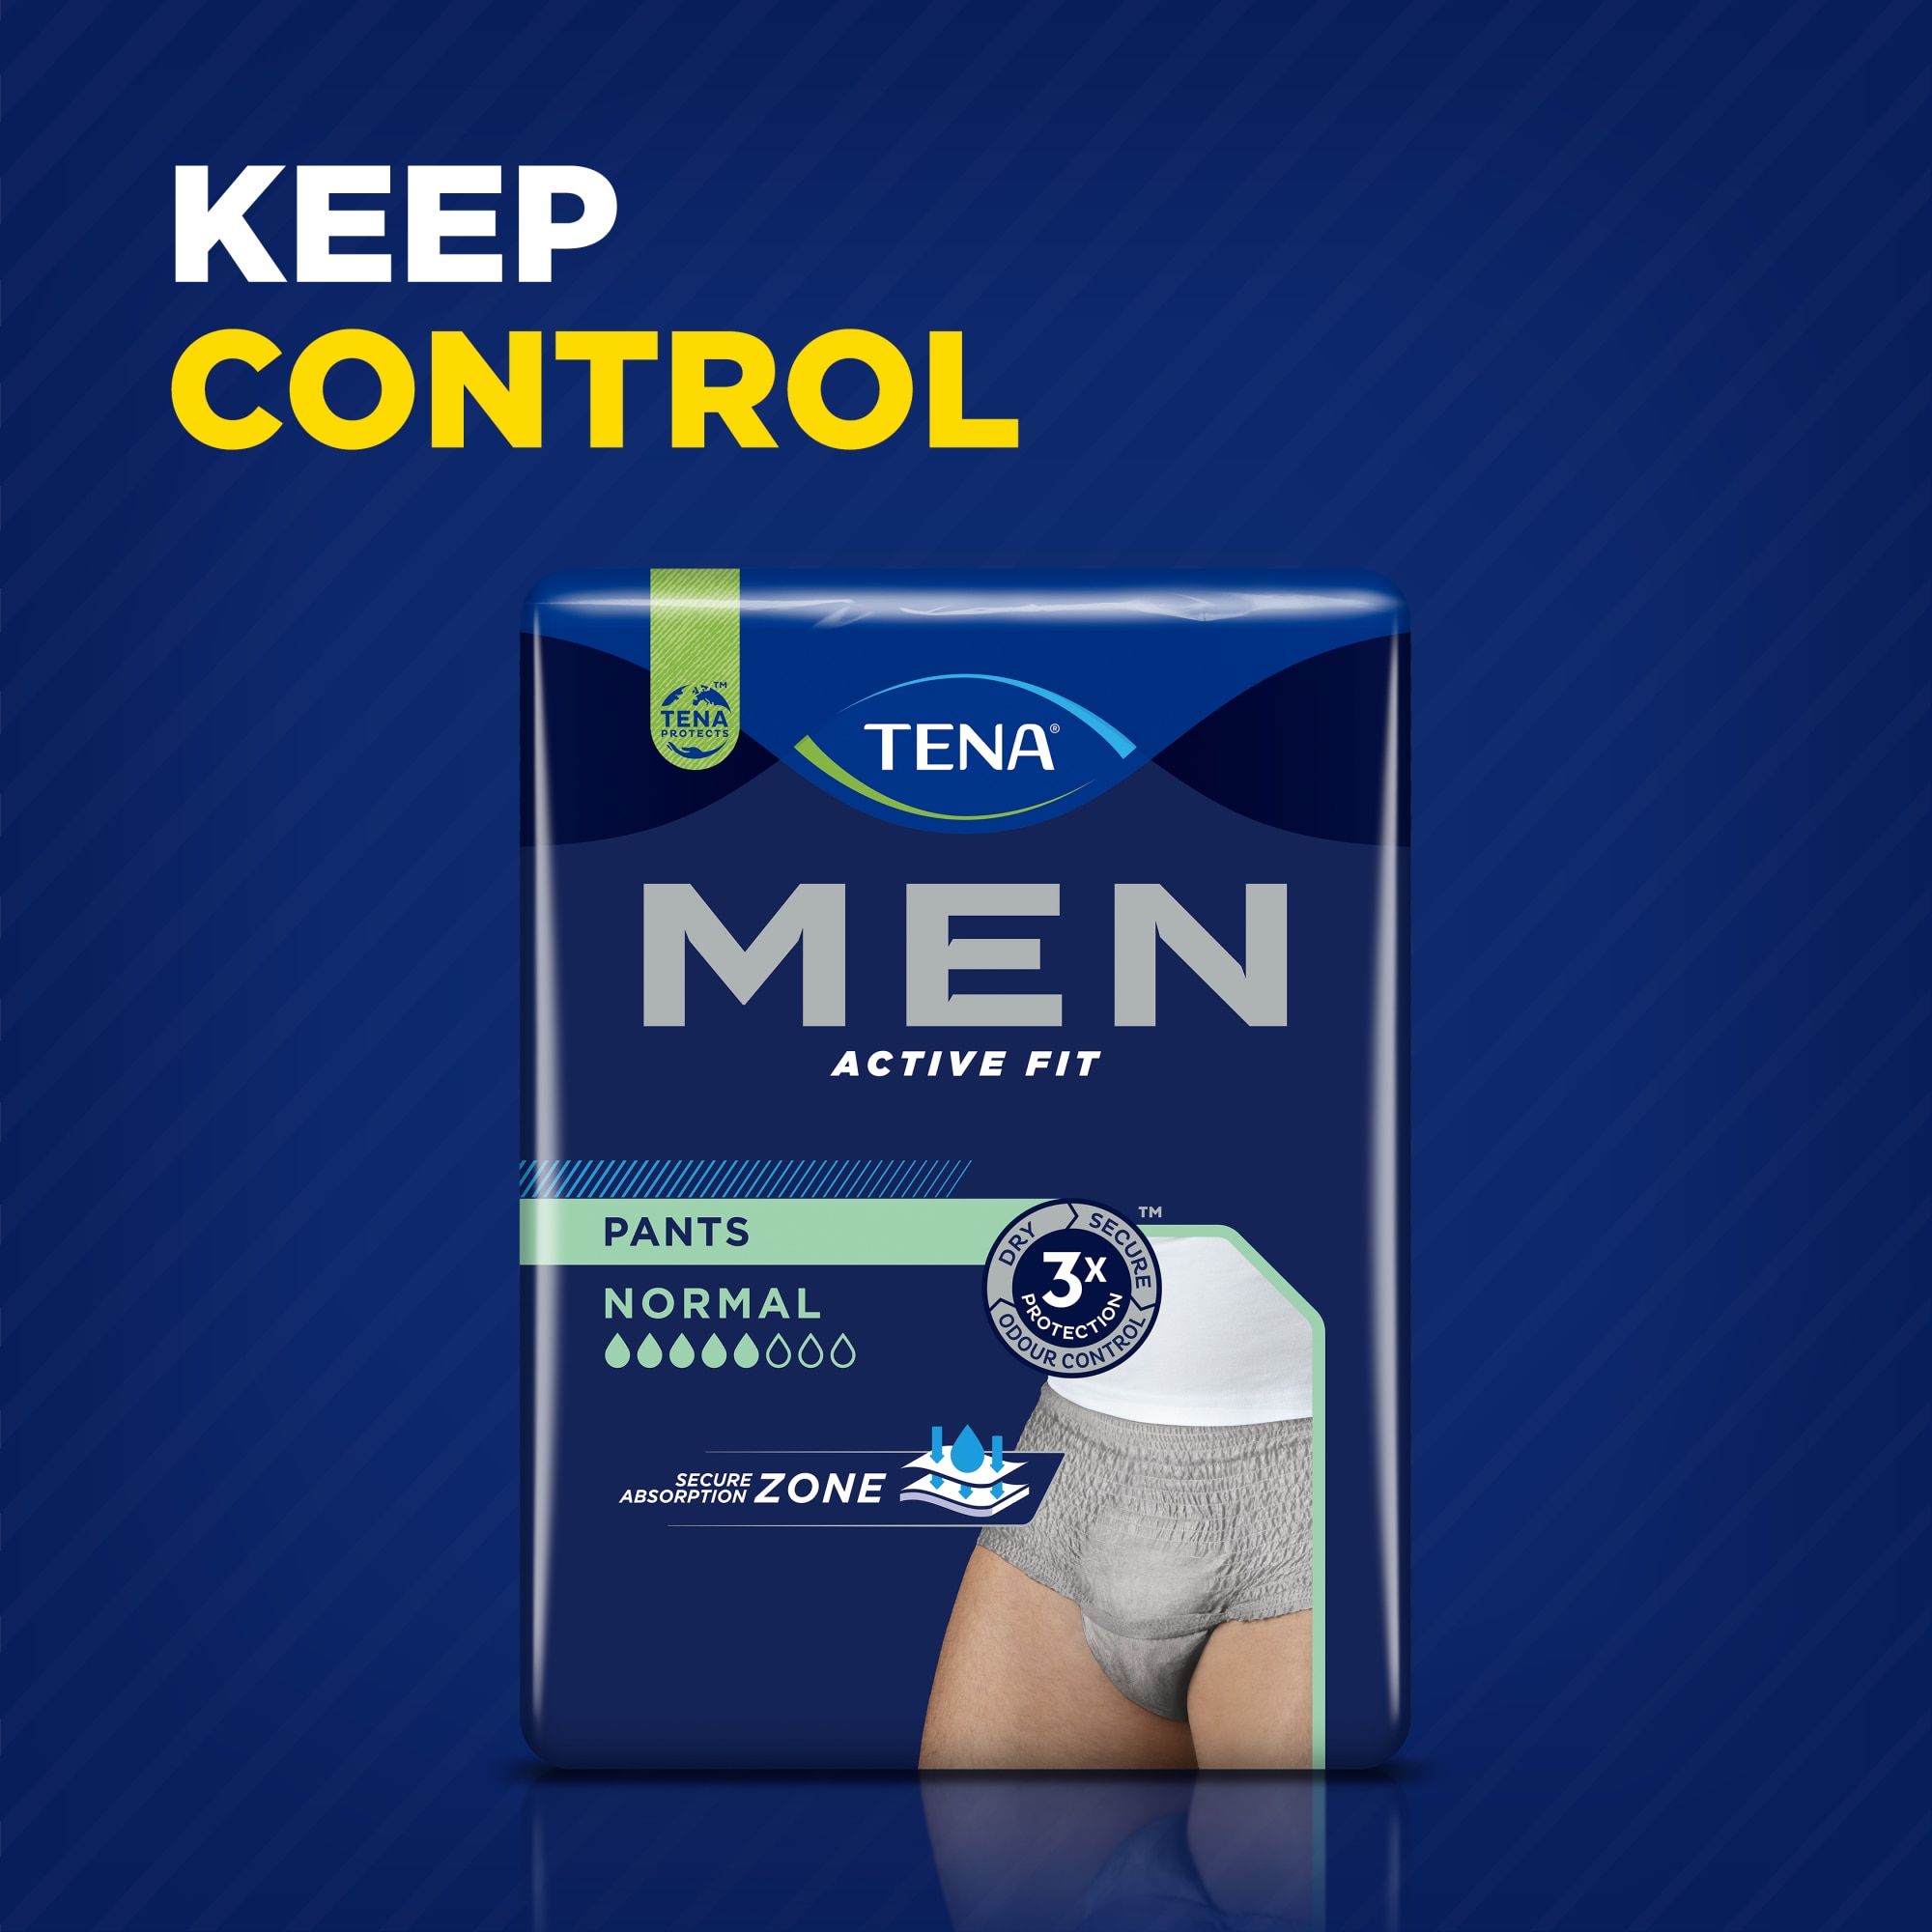 Free Sample of Tena for Men